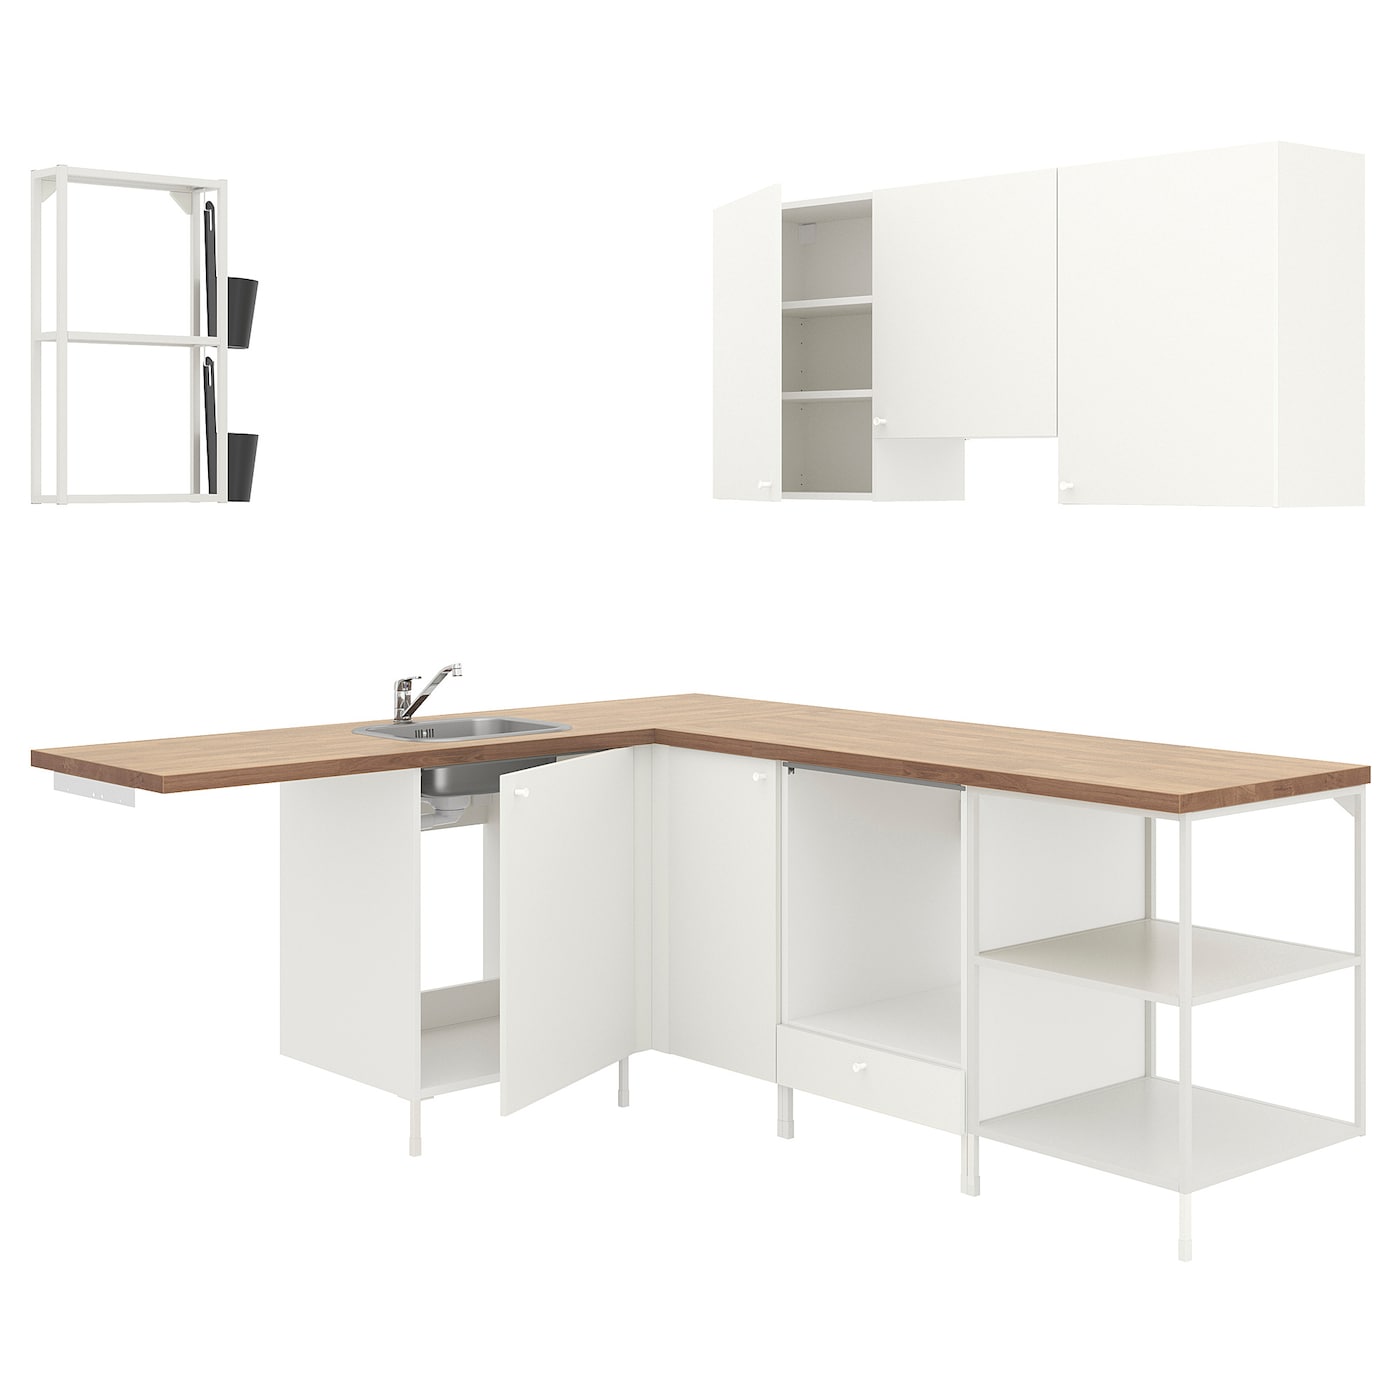 Угловой кухонный гарнитур - IKEA ENHET, 190.5х228.5х75 см, белый, ЭНХЕТ ИКЕА